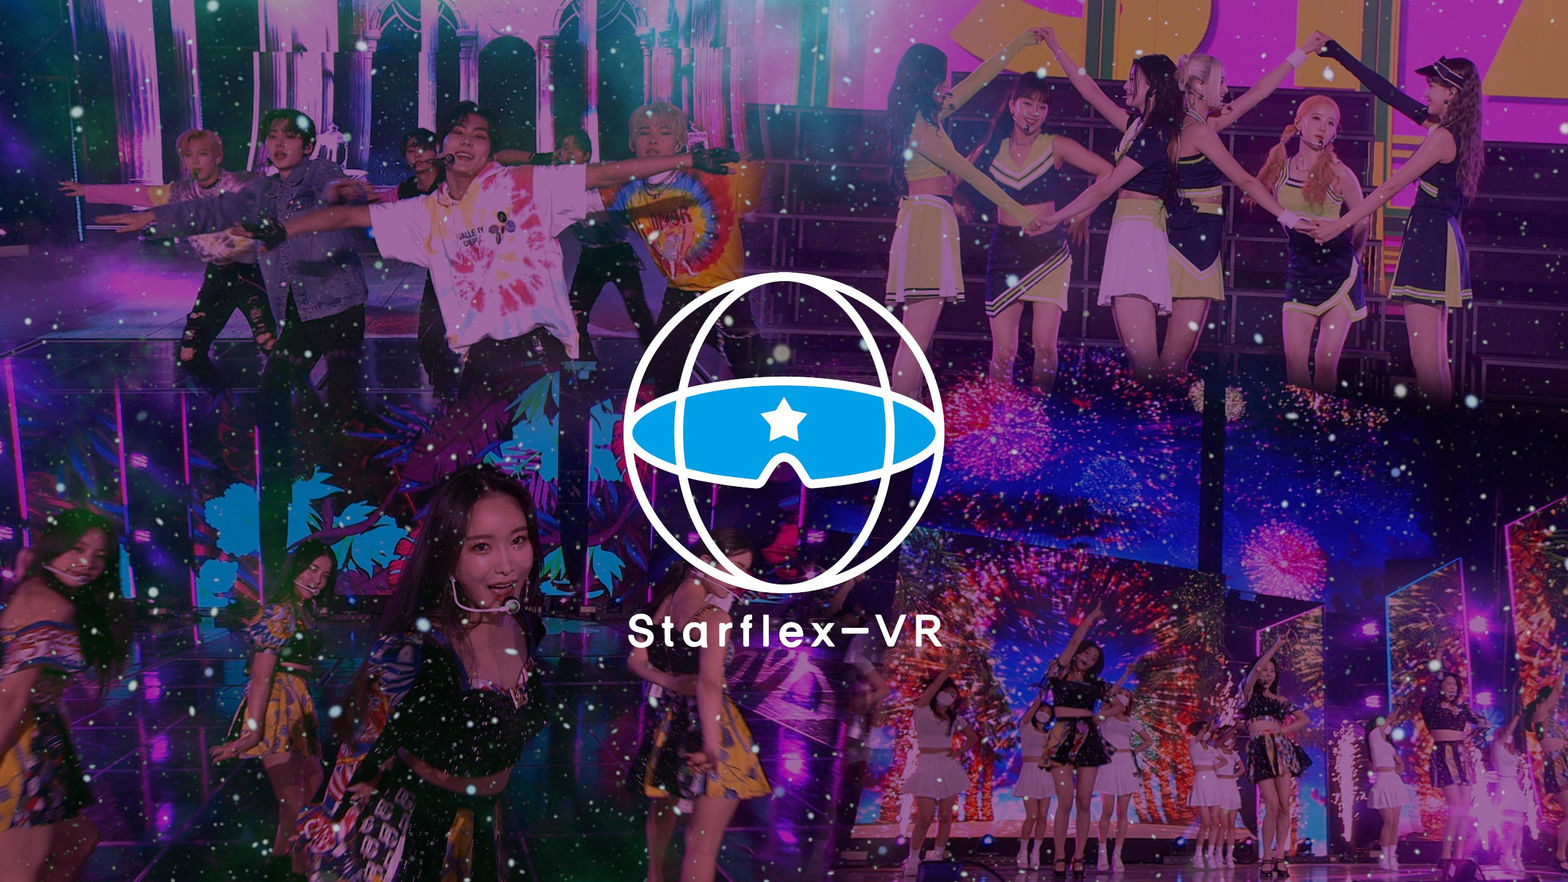 Starflex-VR